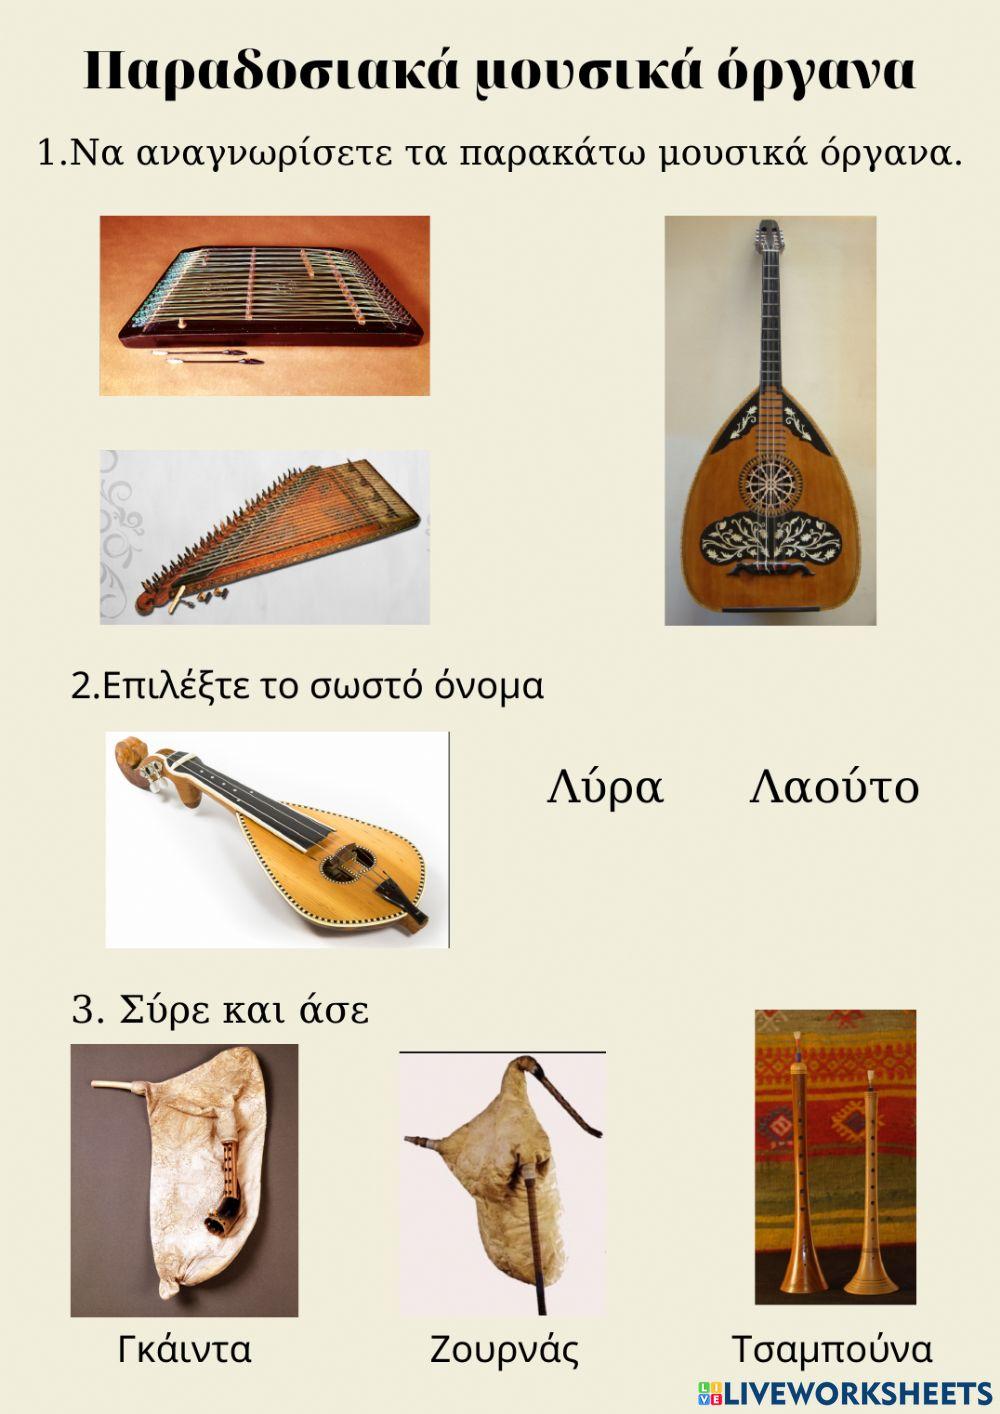 Παραδοσιακά μουσικά όργανα worksheet | Live Worksheets